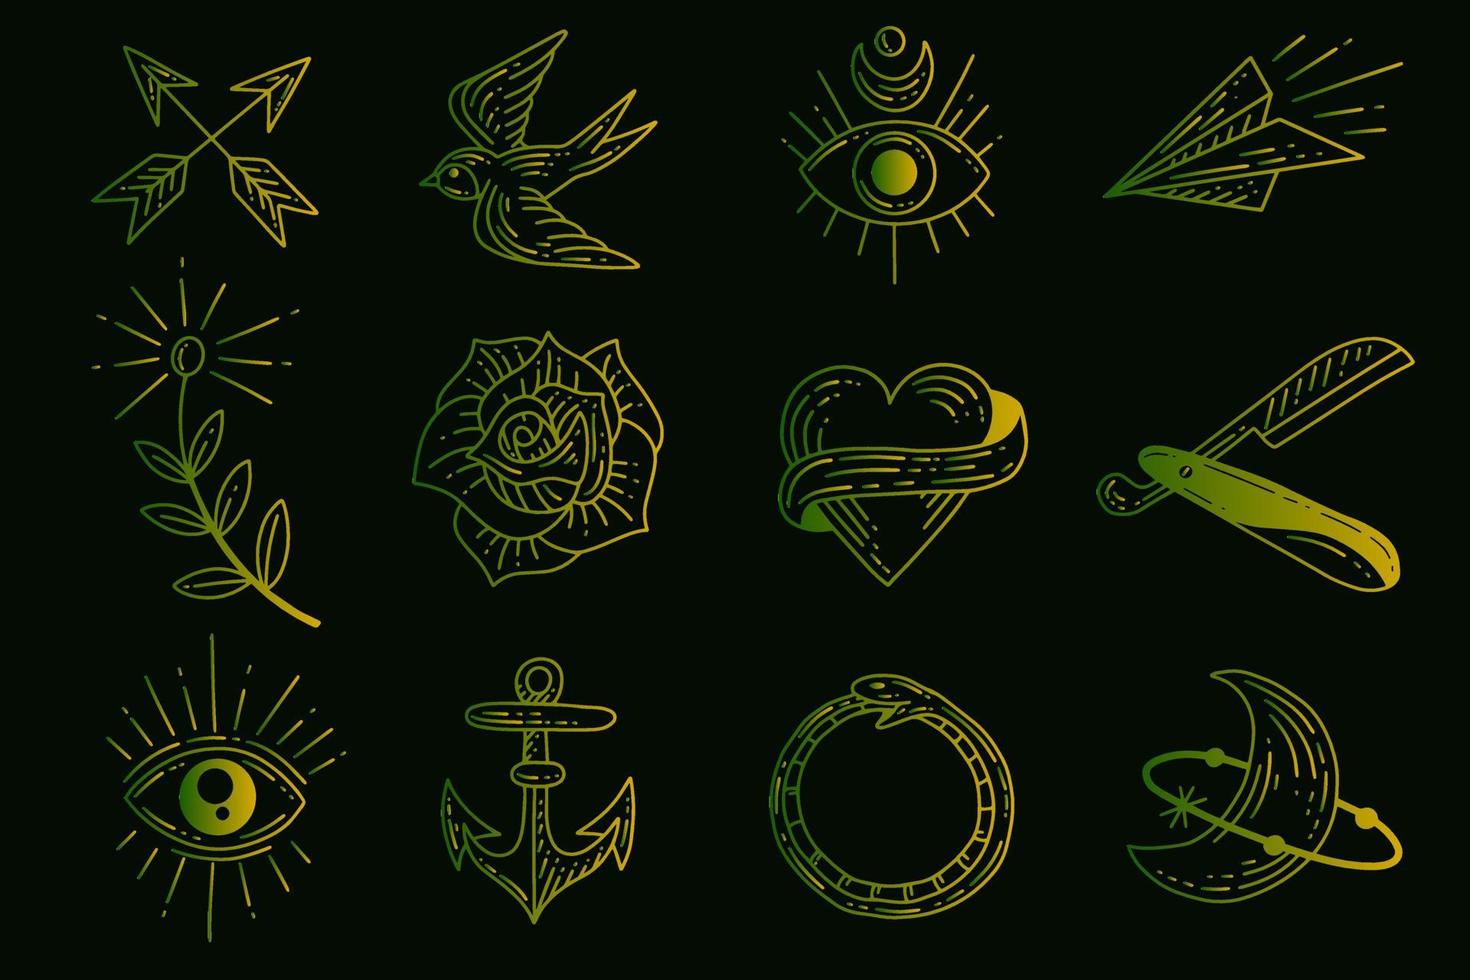 insieme di set mistico celeste minimalismo semplice tatuaggio clipart simbolo spazio doodle elementi esoterici illustrazione d'epoca vettore